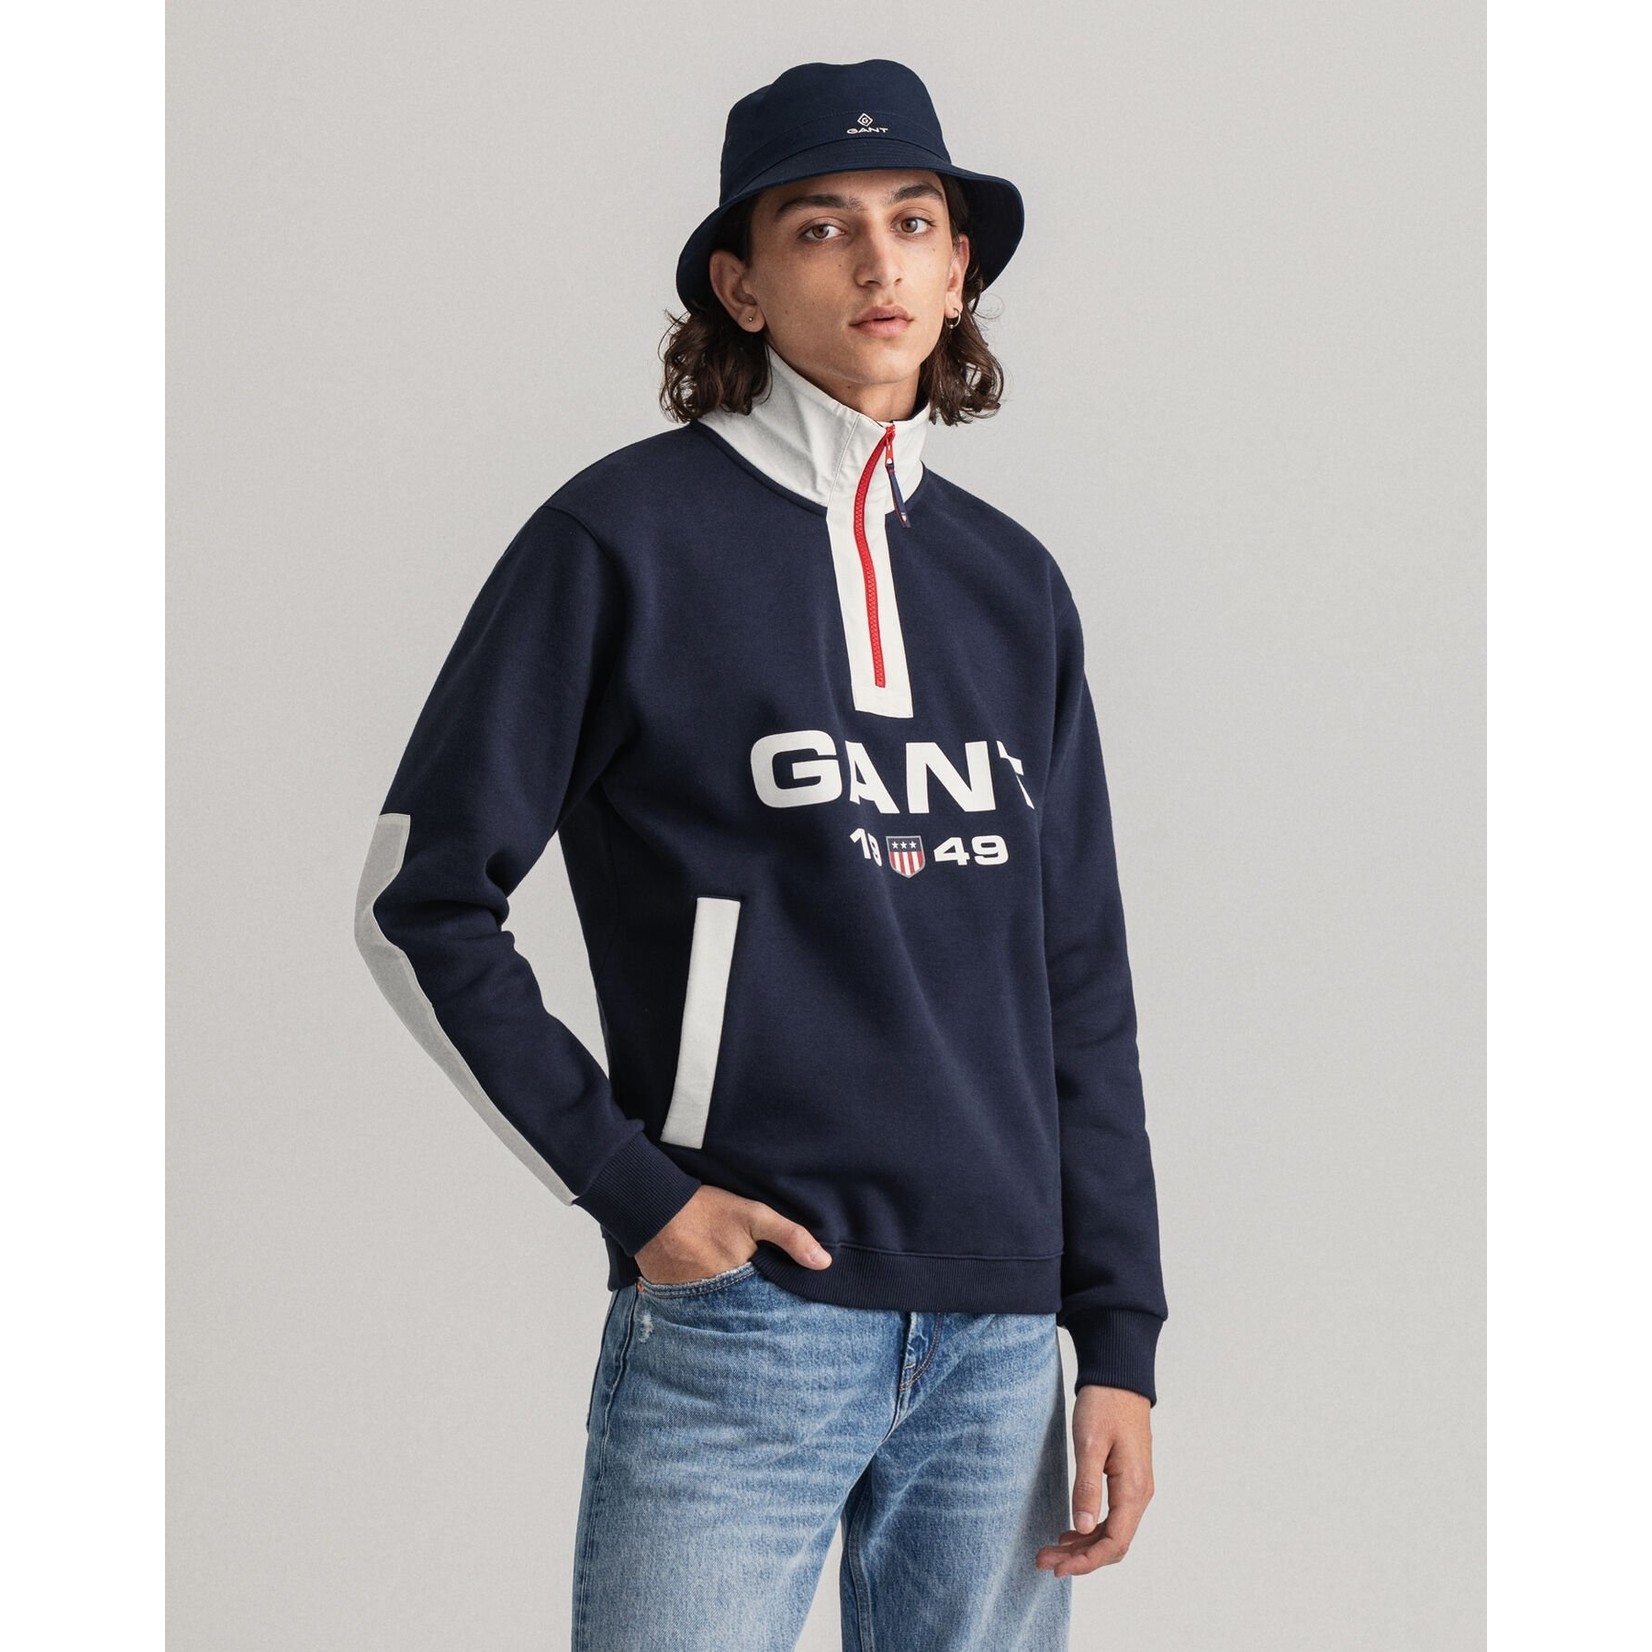 GANT retro logo sweatshirt met korte rits grijs